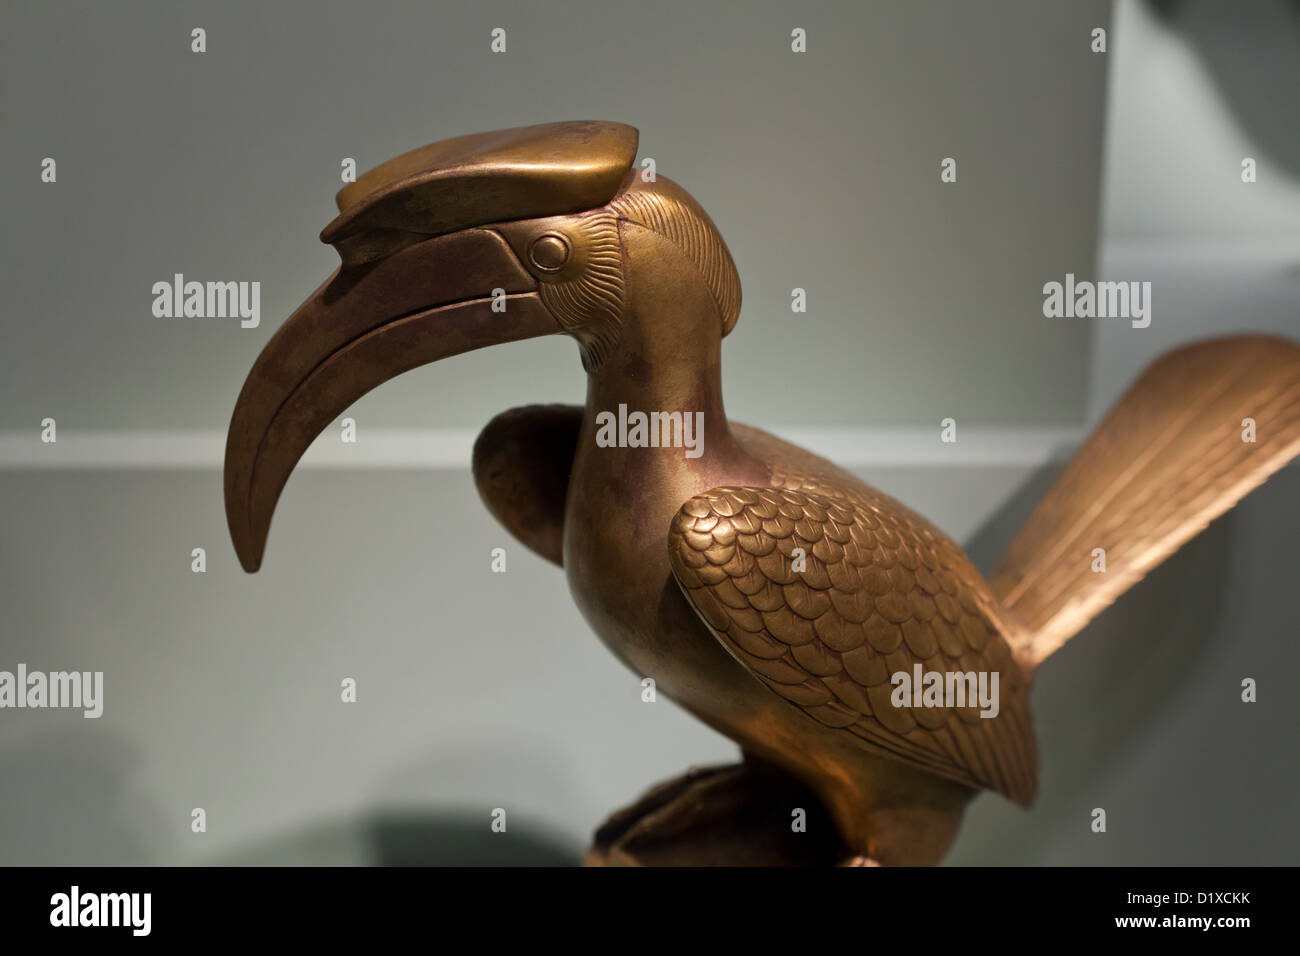 Concave-Casqued hornbill sculpture Stock Photo